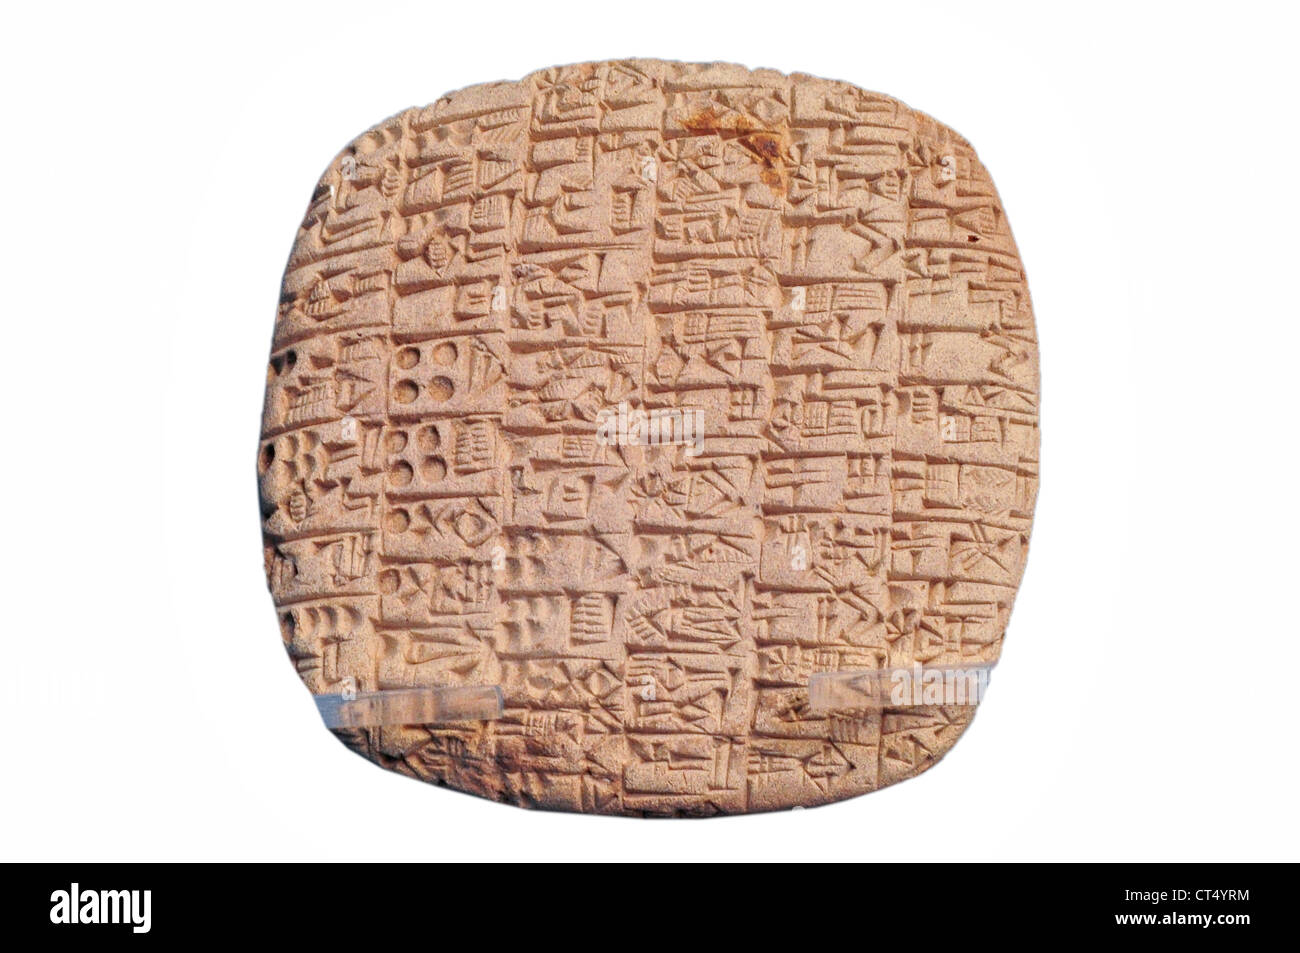 Piastrella con documento sumera in script cuneiforme, 2500 BC Foto Stock